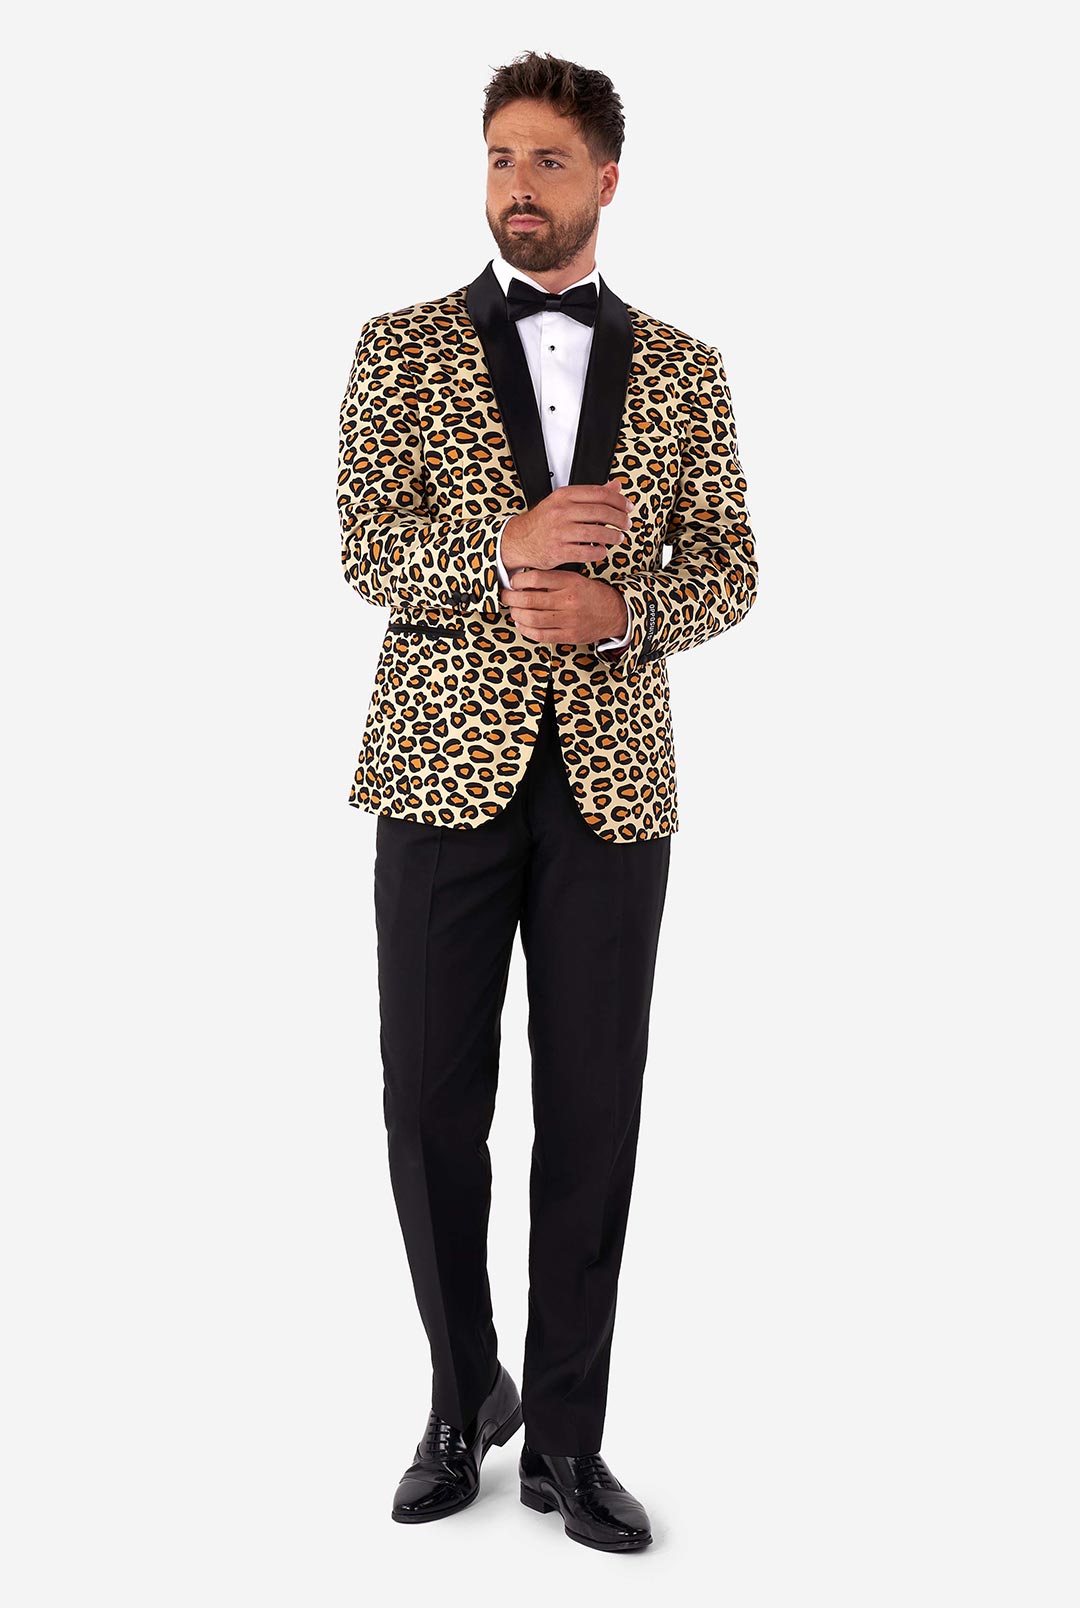 The Jag Tuxedo | Stylish Prom Tuxedo | OppoSuits